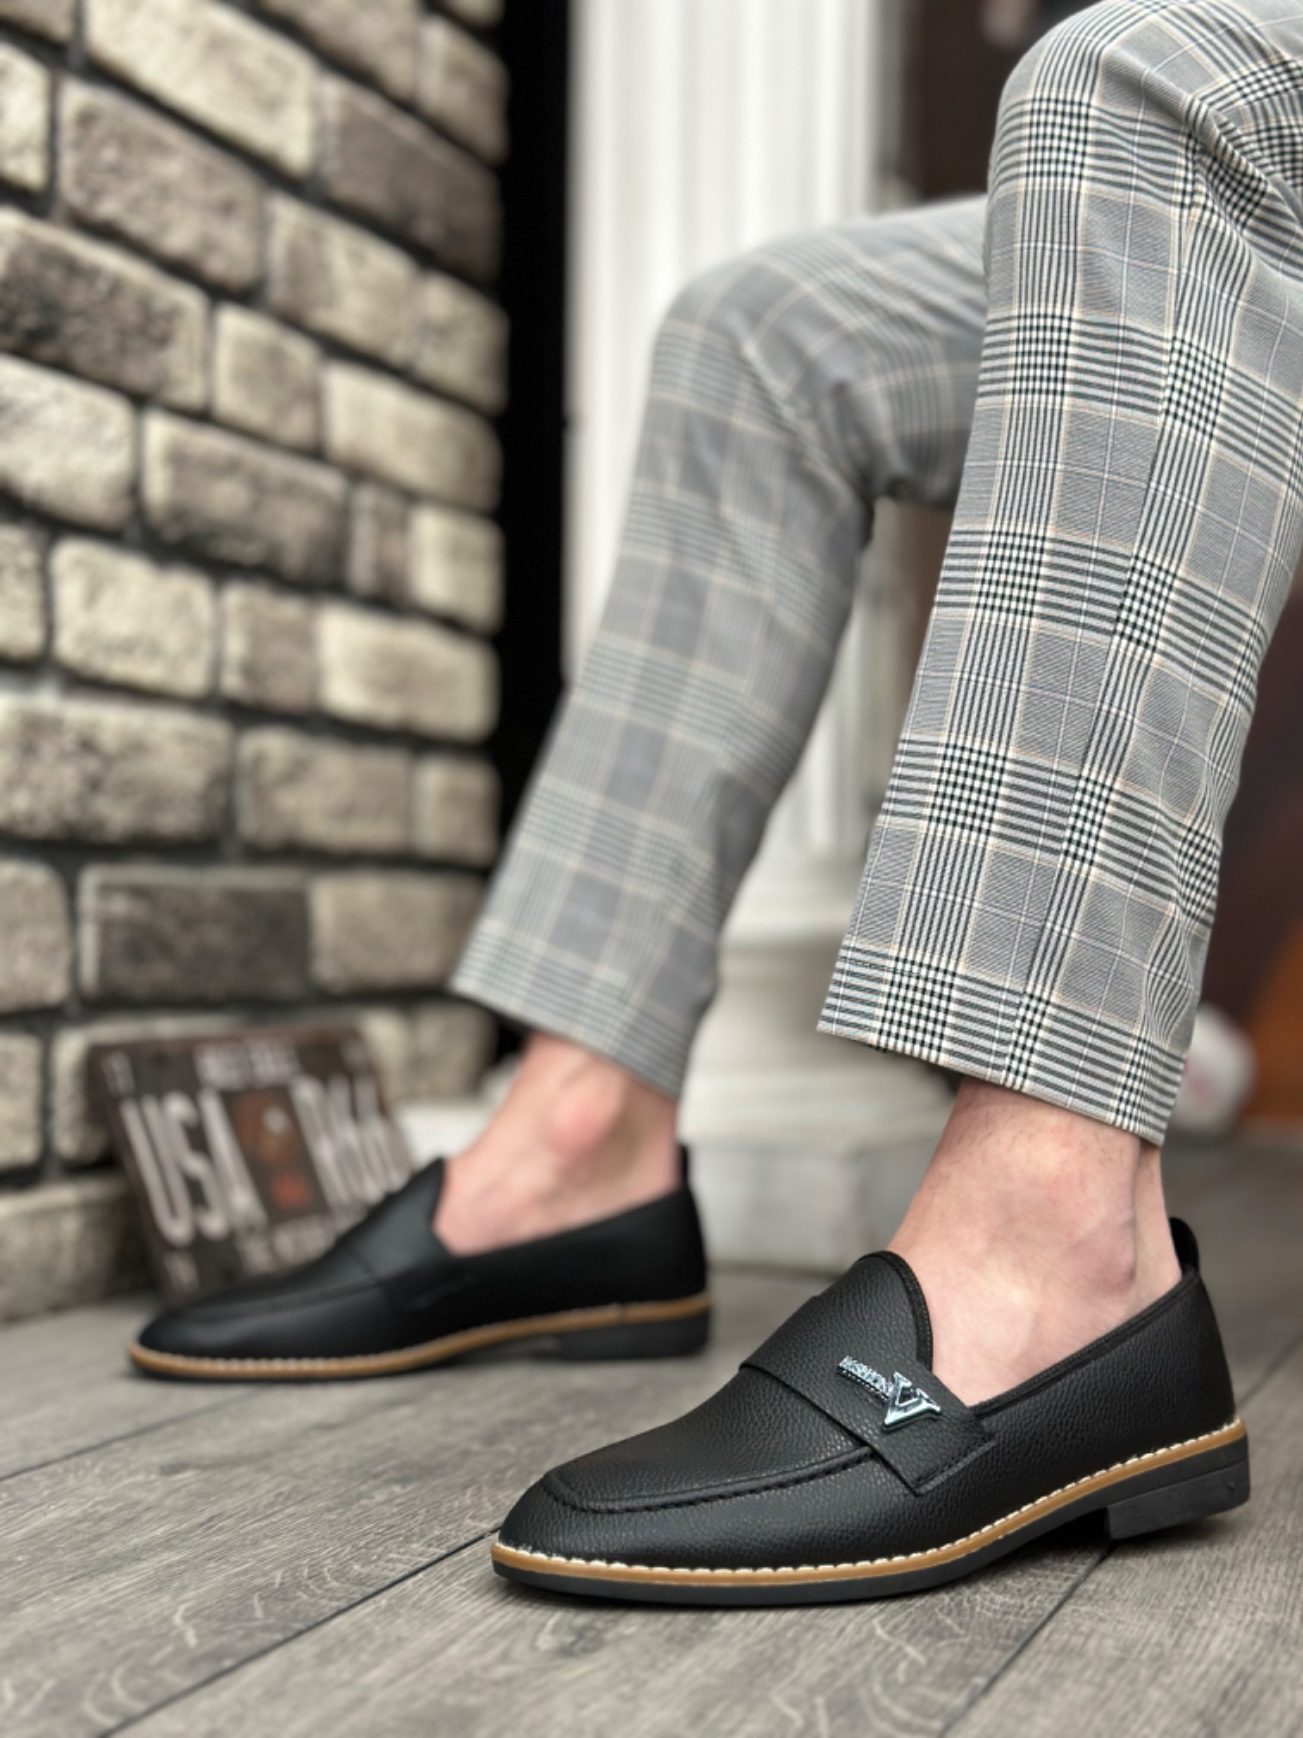 CLZ946 Cilt Püsküllü Corcik Siyah V Fashıon Tokalı Klasik Erkek Ayakkabısı